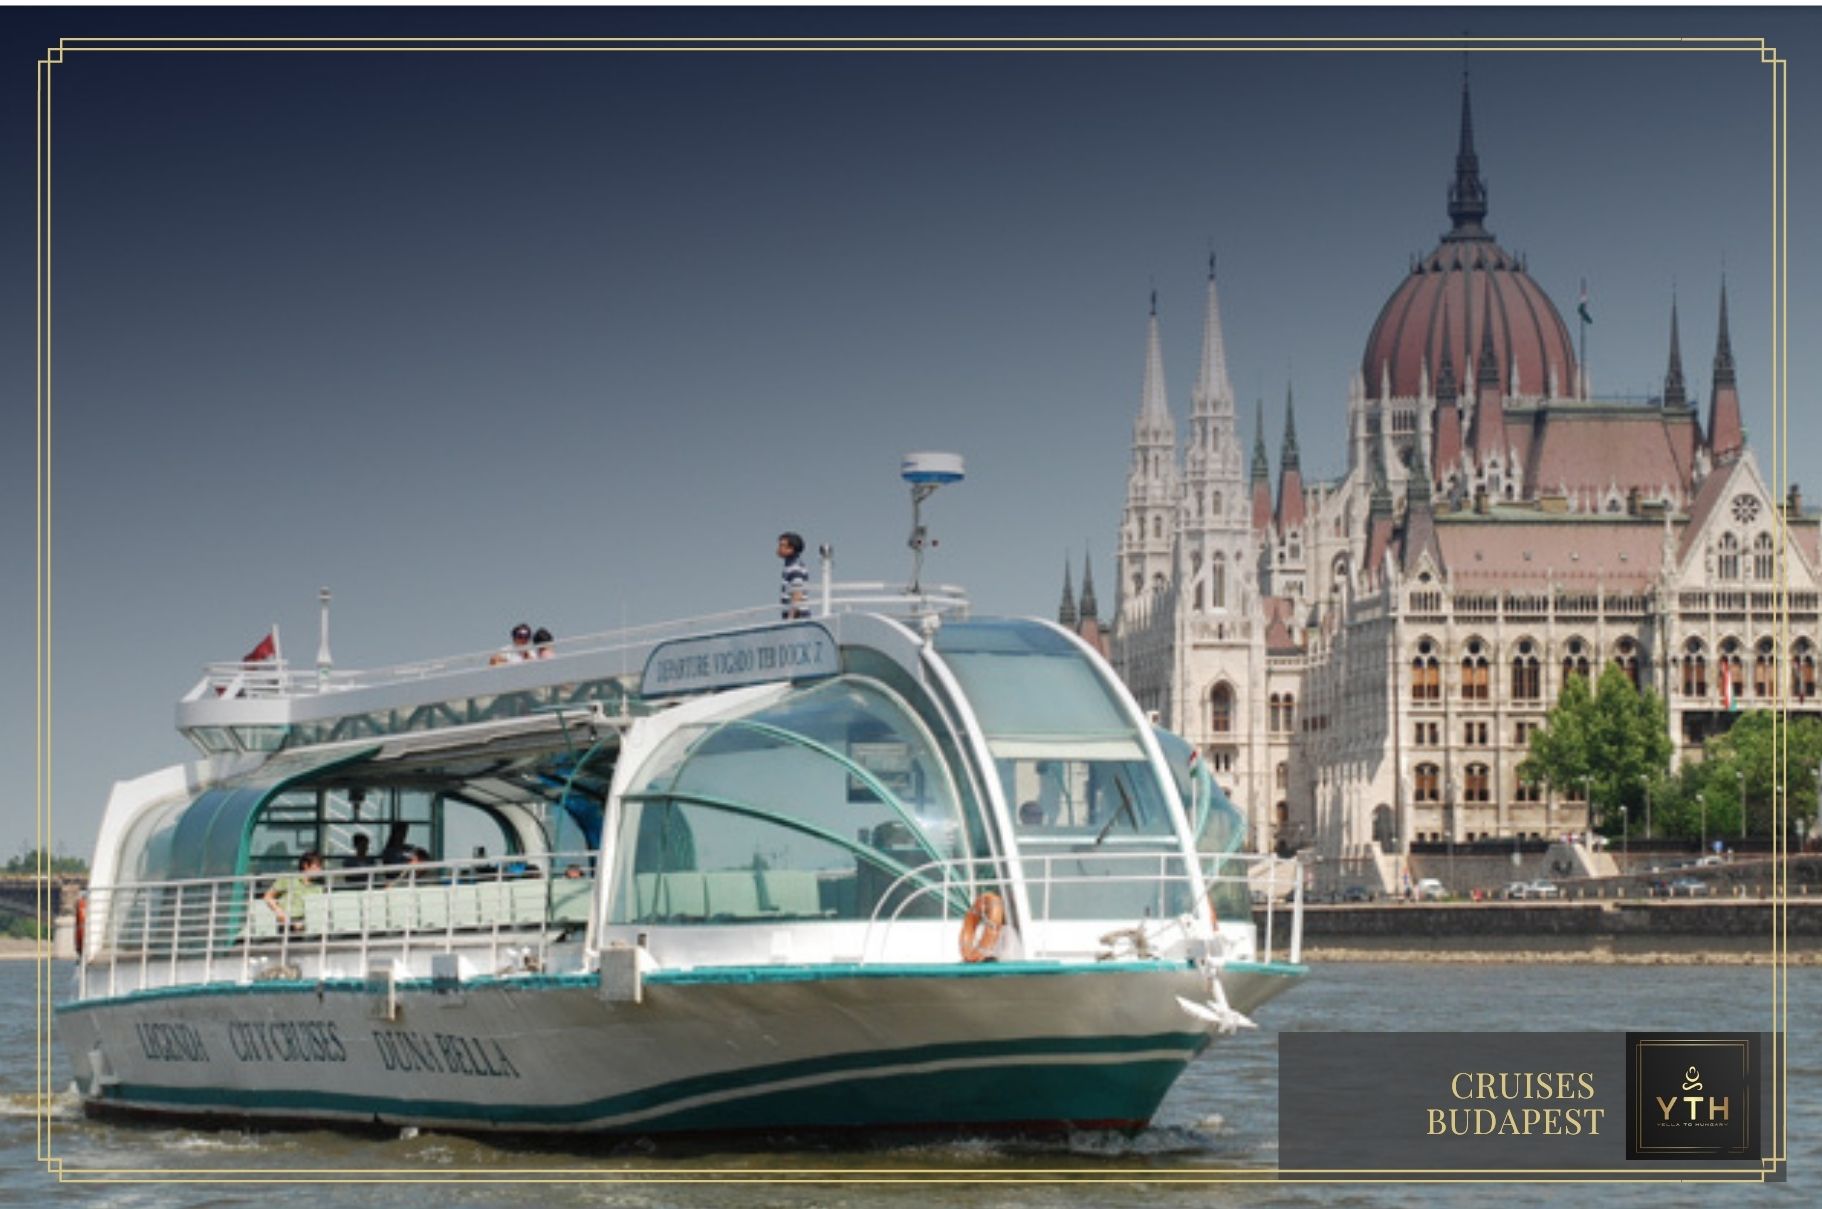 Marsa shagra elphinstone merülőhelyightseeing by cruises in Budapest, Hungary